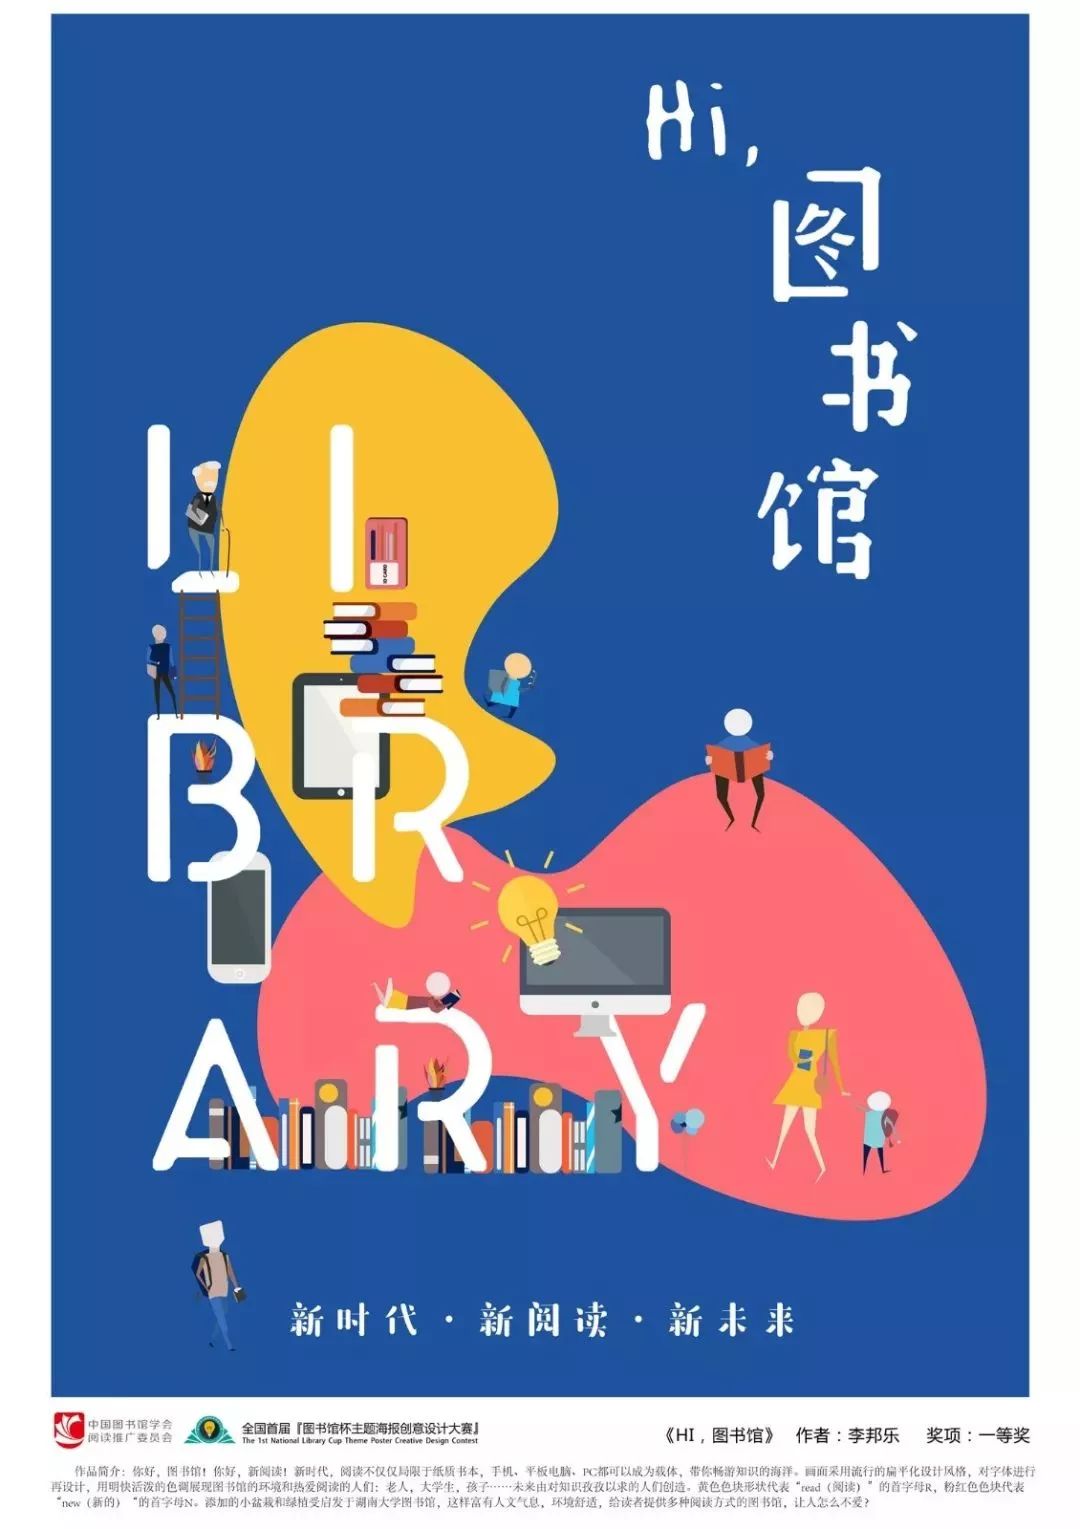 文化||全国首届图书馆杯主题海报创意设计大赛作品展走进清溪